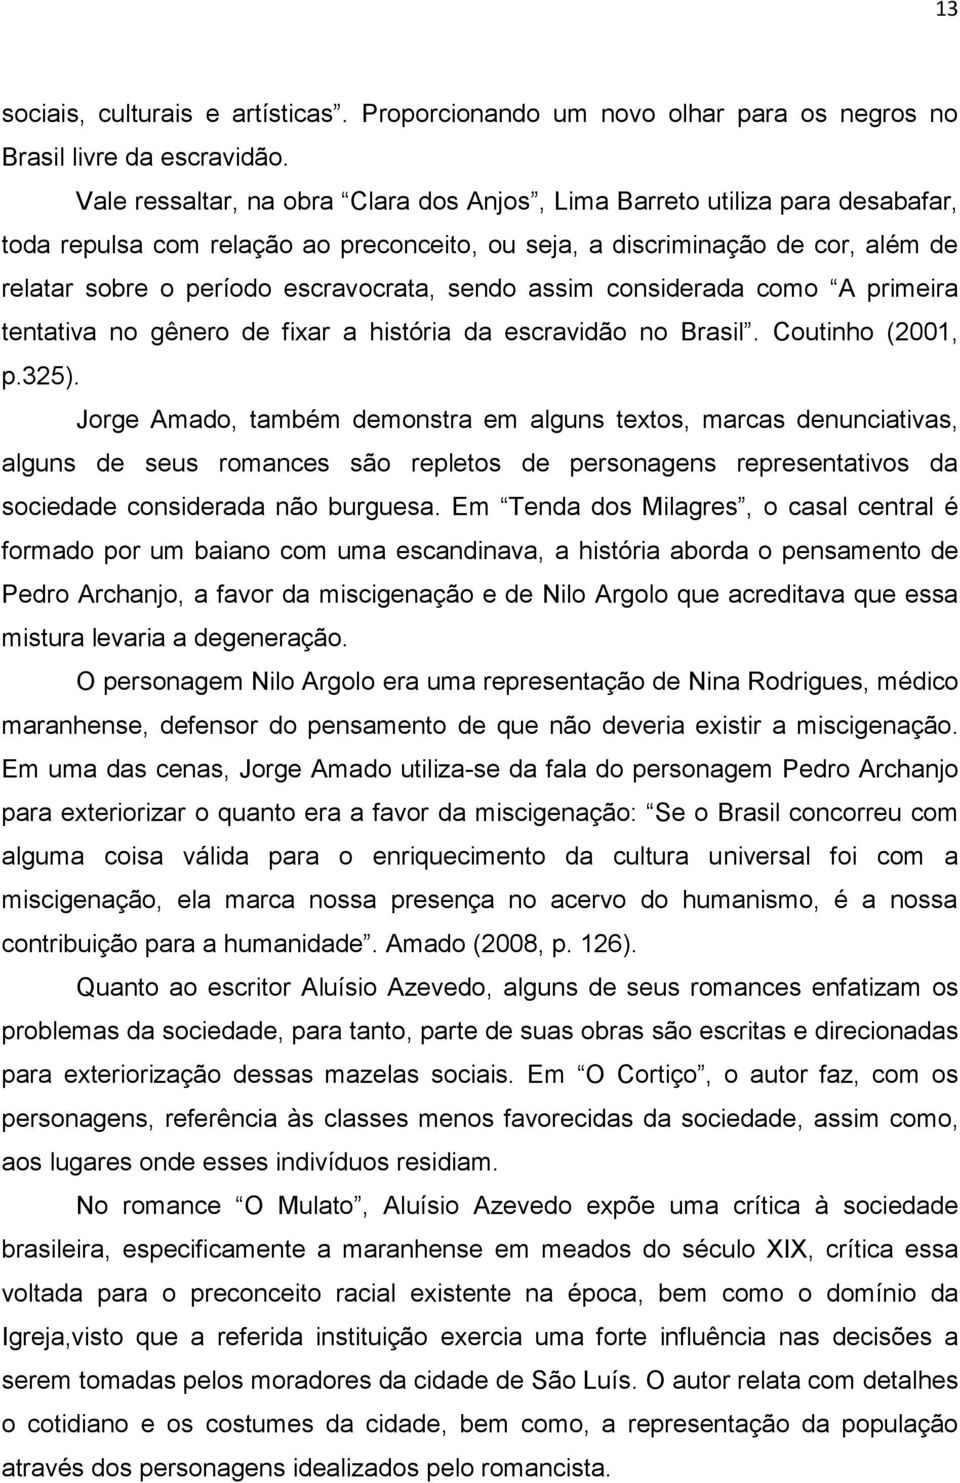 sendo assim considerada como A primeira tentativa no gênero de fixar a história da escravidão no Brasil. Coutinho (2001, p.325).